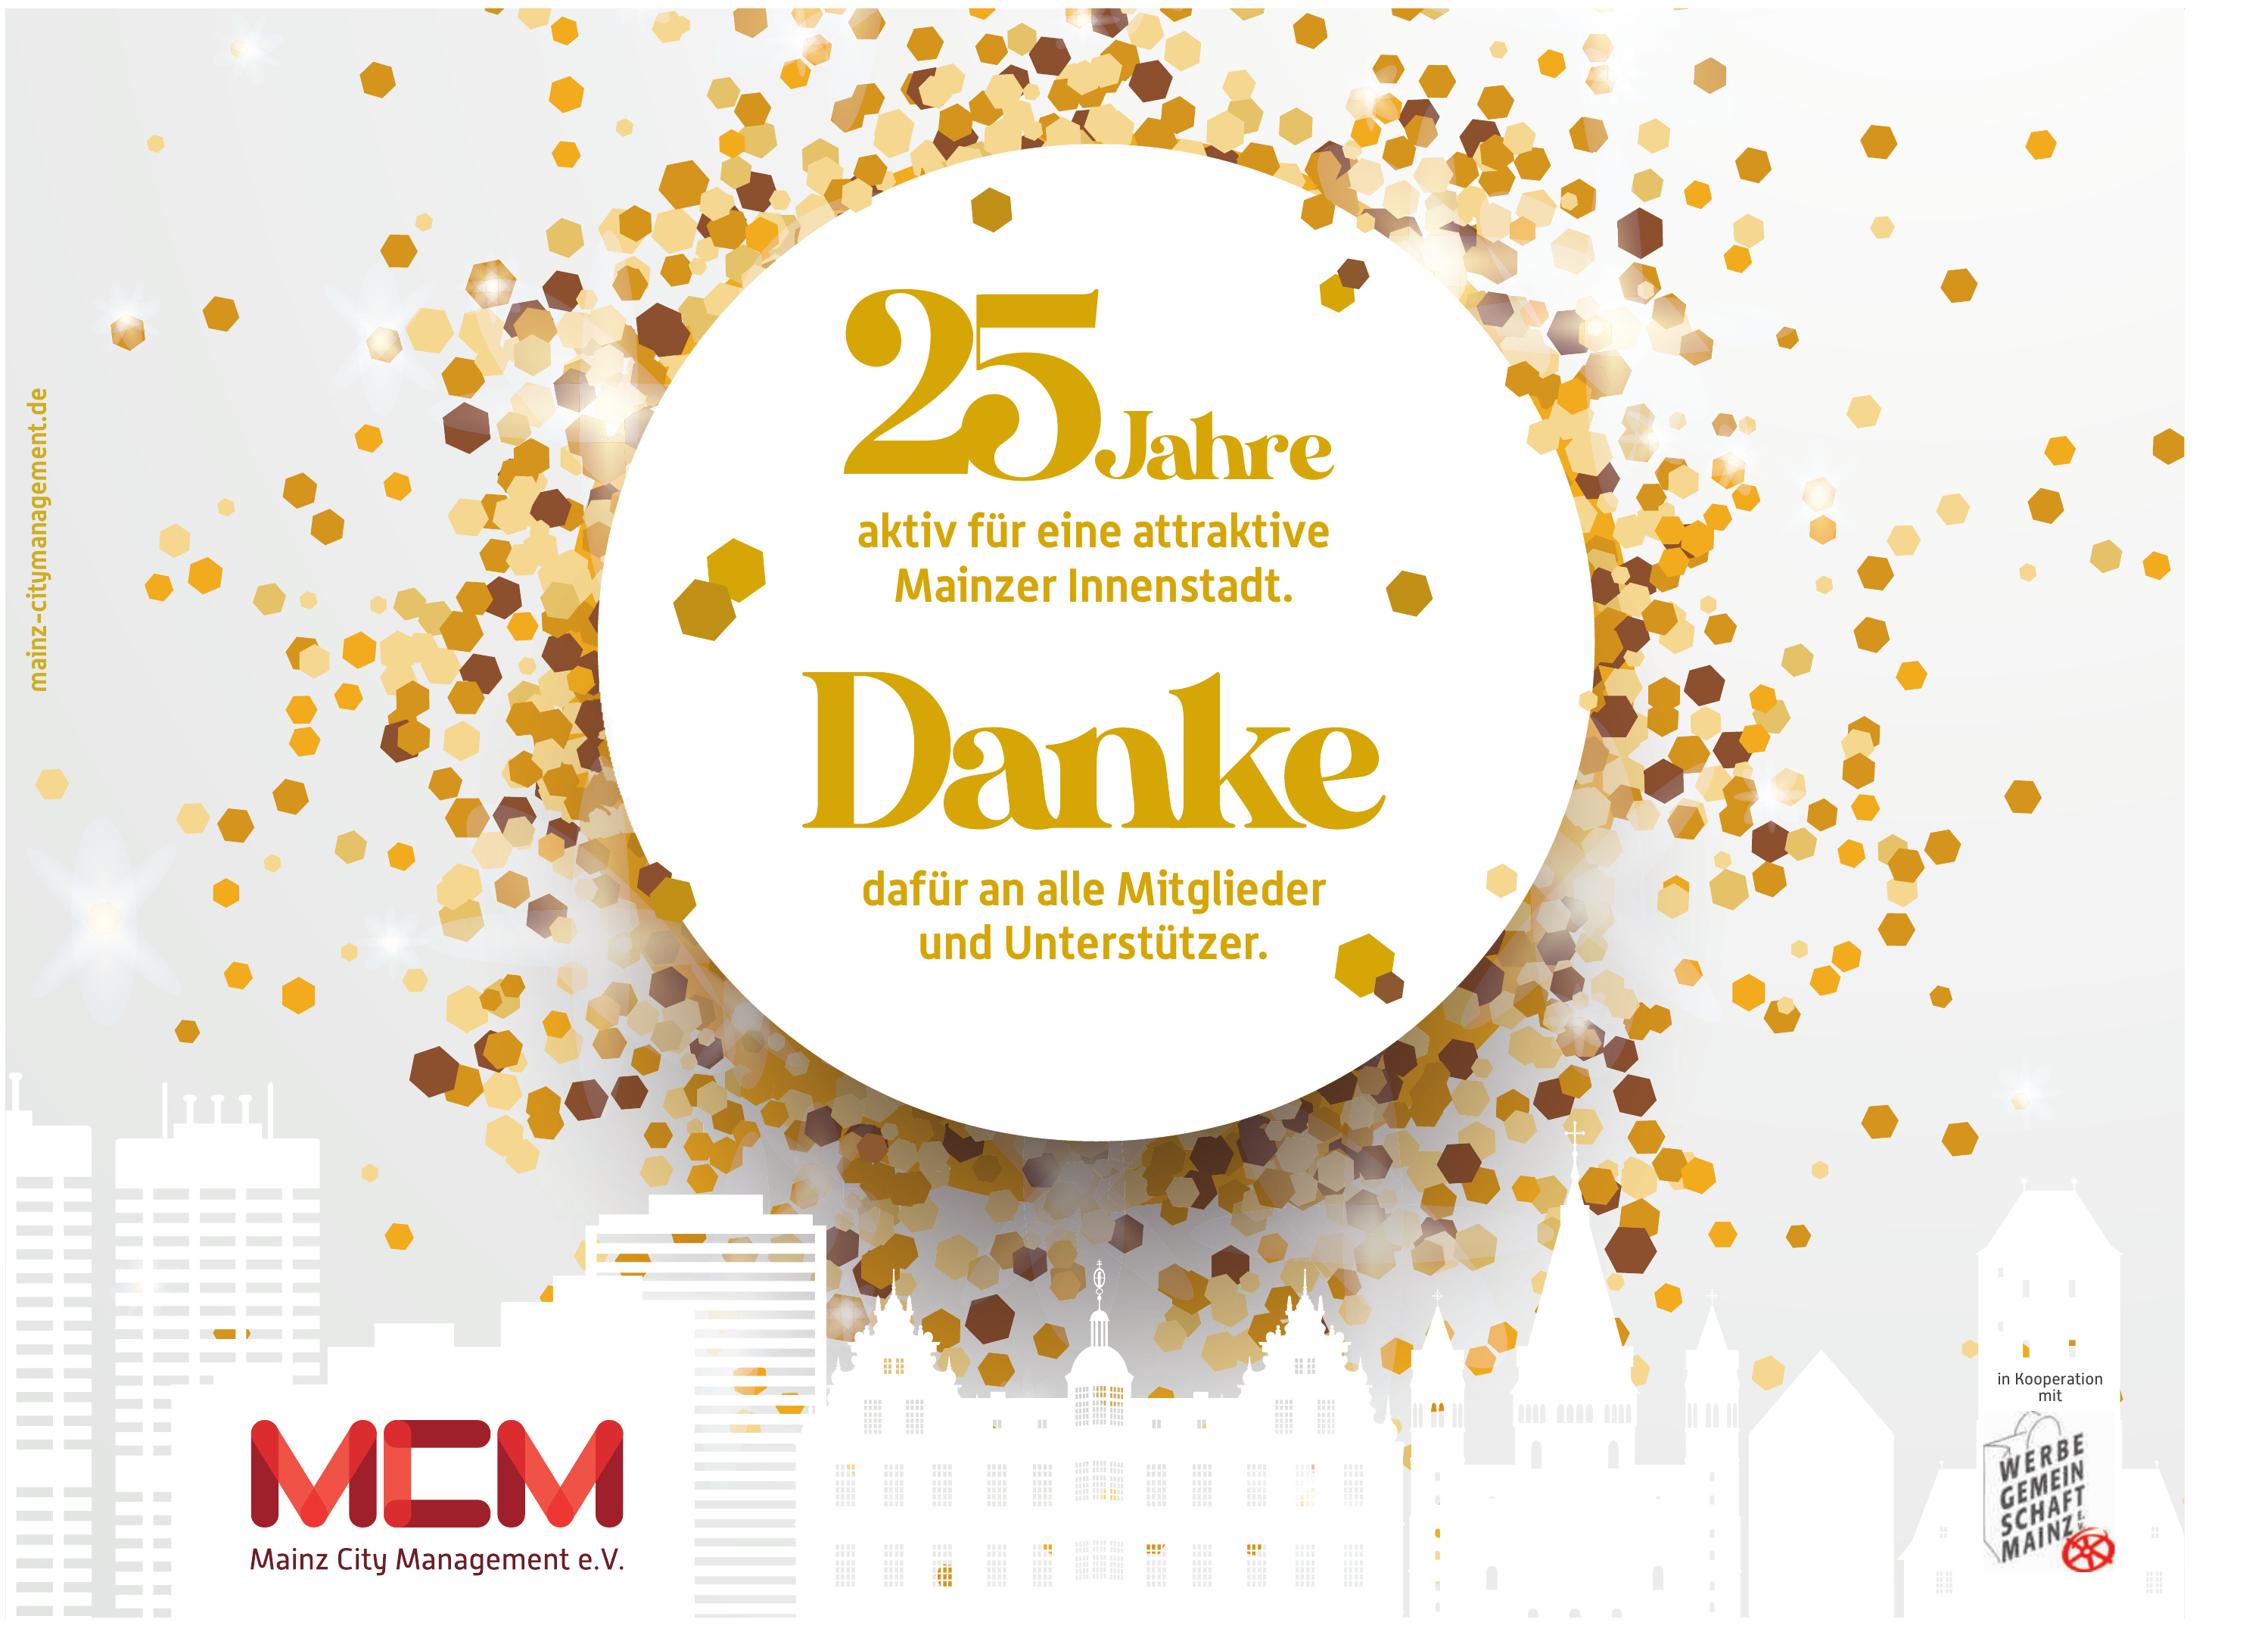 MCM Mainz City Management e.V.